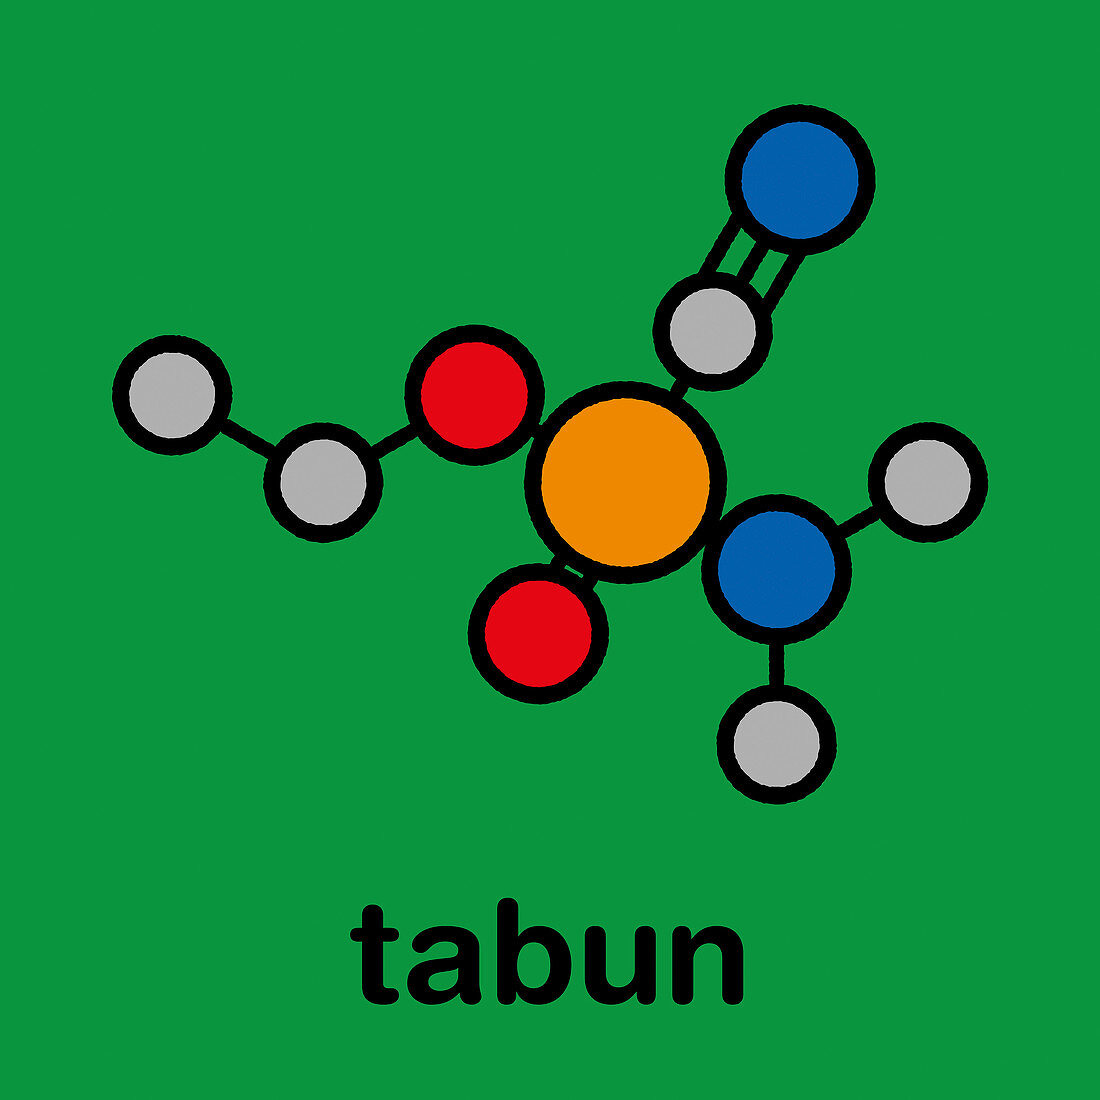 Tabun nerve agent molecule